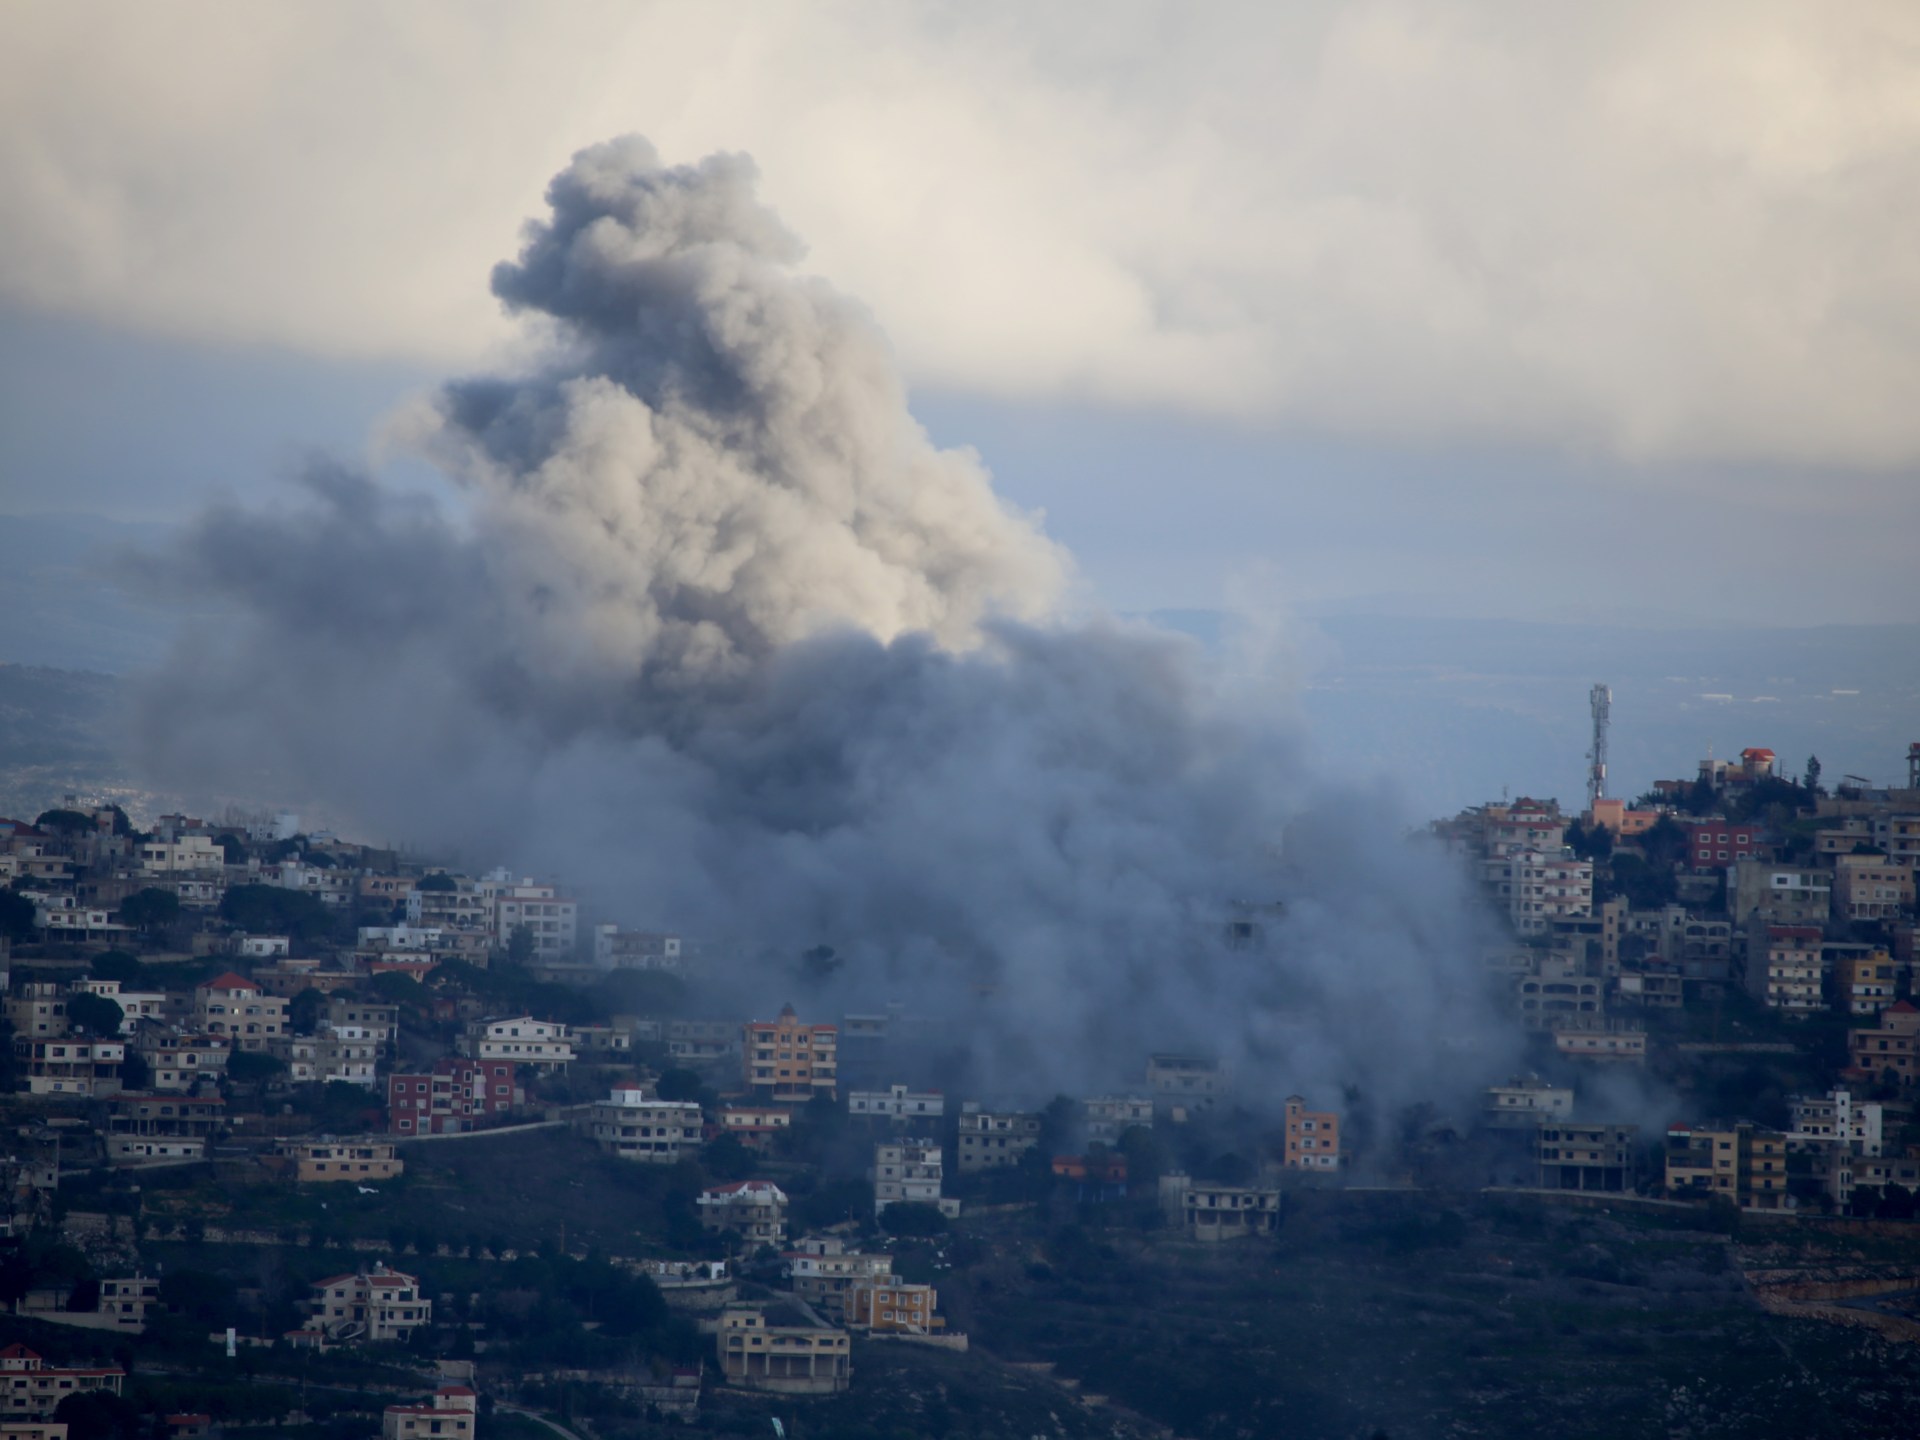 مقتل 5 عناصر من حزب الله في غارات إسرائيلية على جنوب لبنان | أخبار – البوكس نيوز